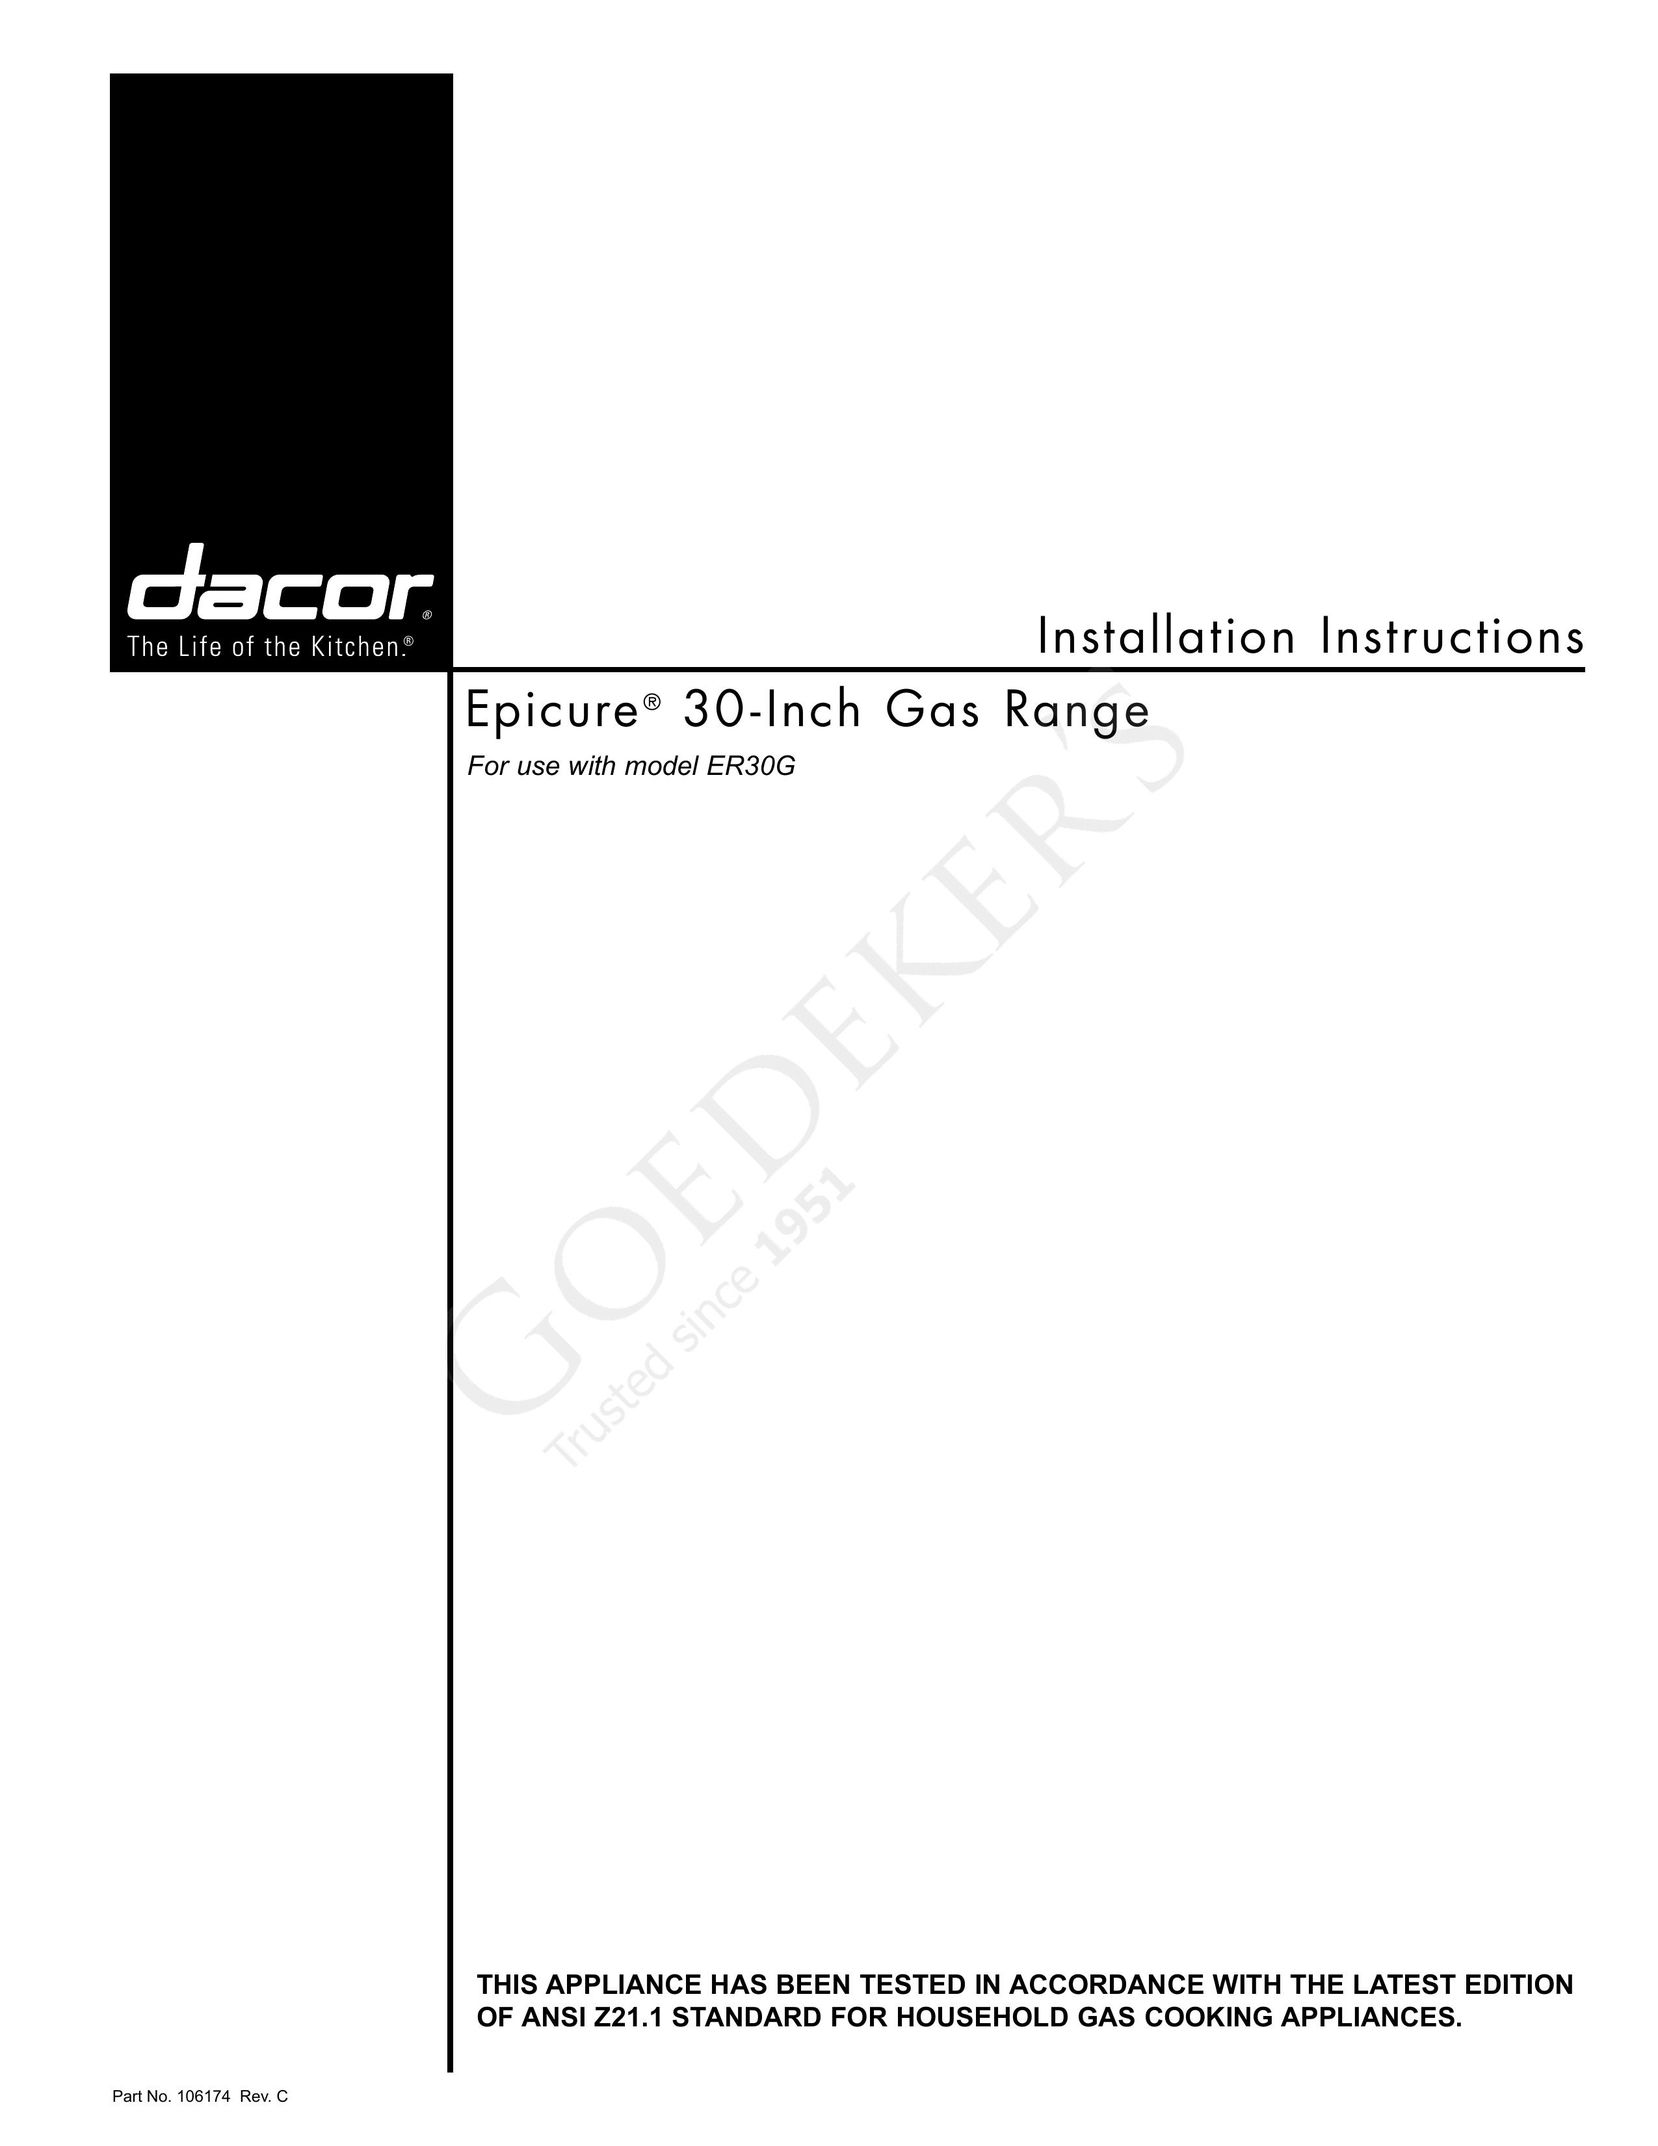 Dacor ER30G Range User Manual